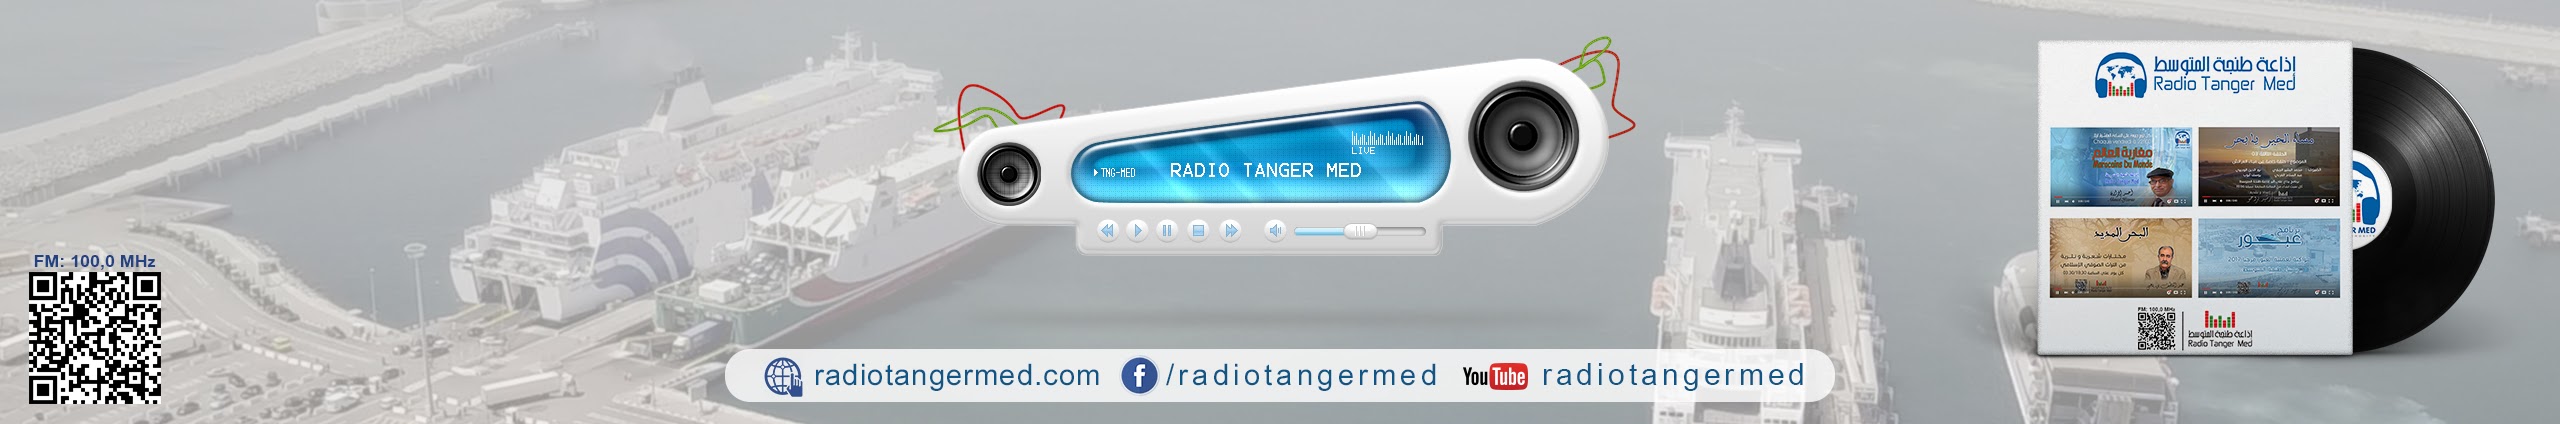 Radio Tanger Med - YouTube